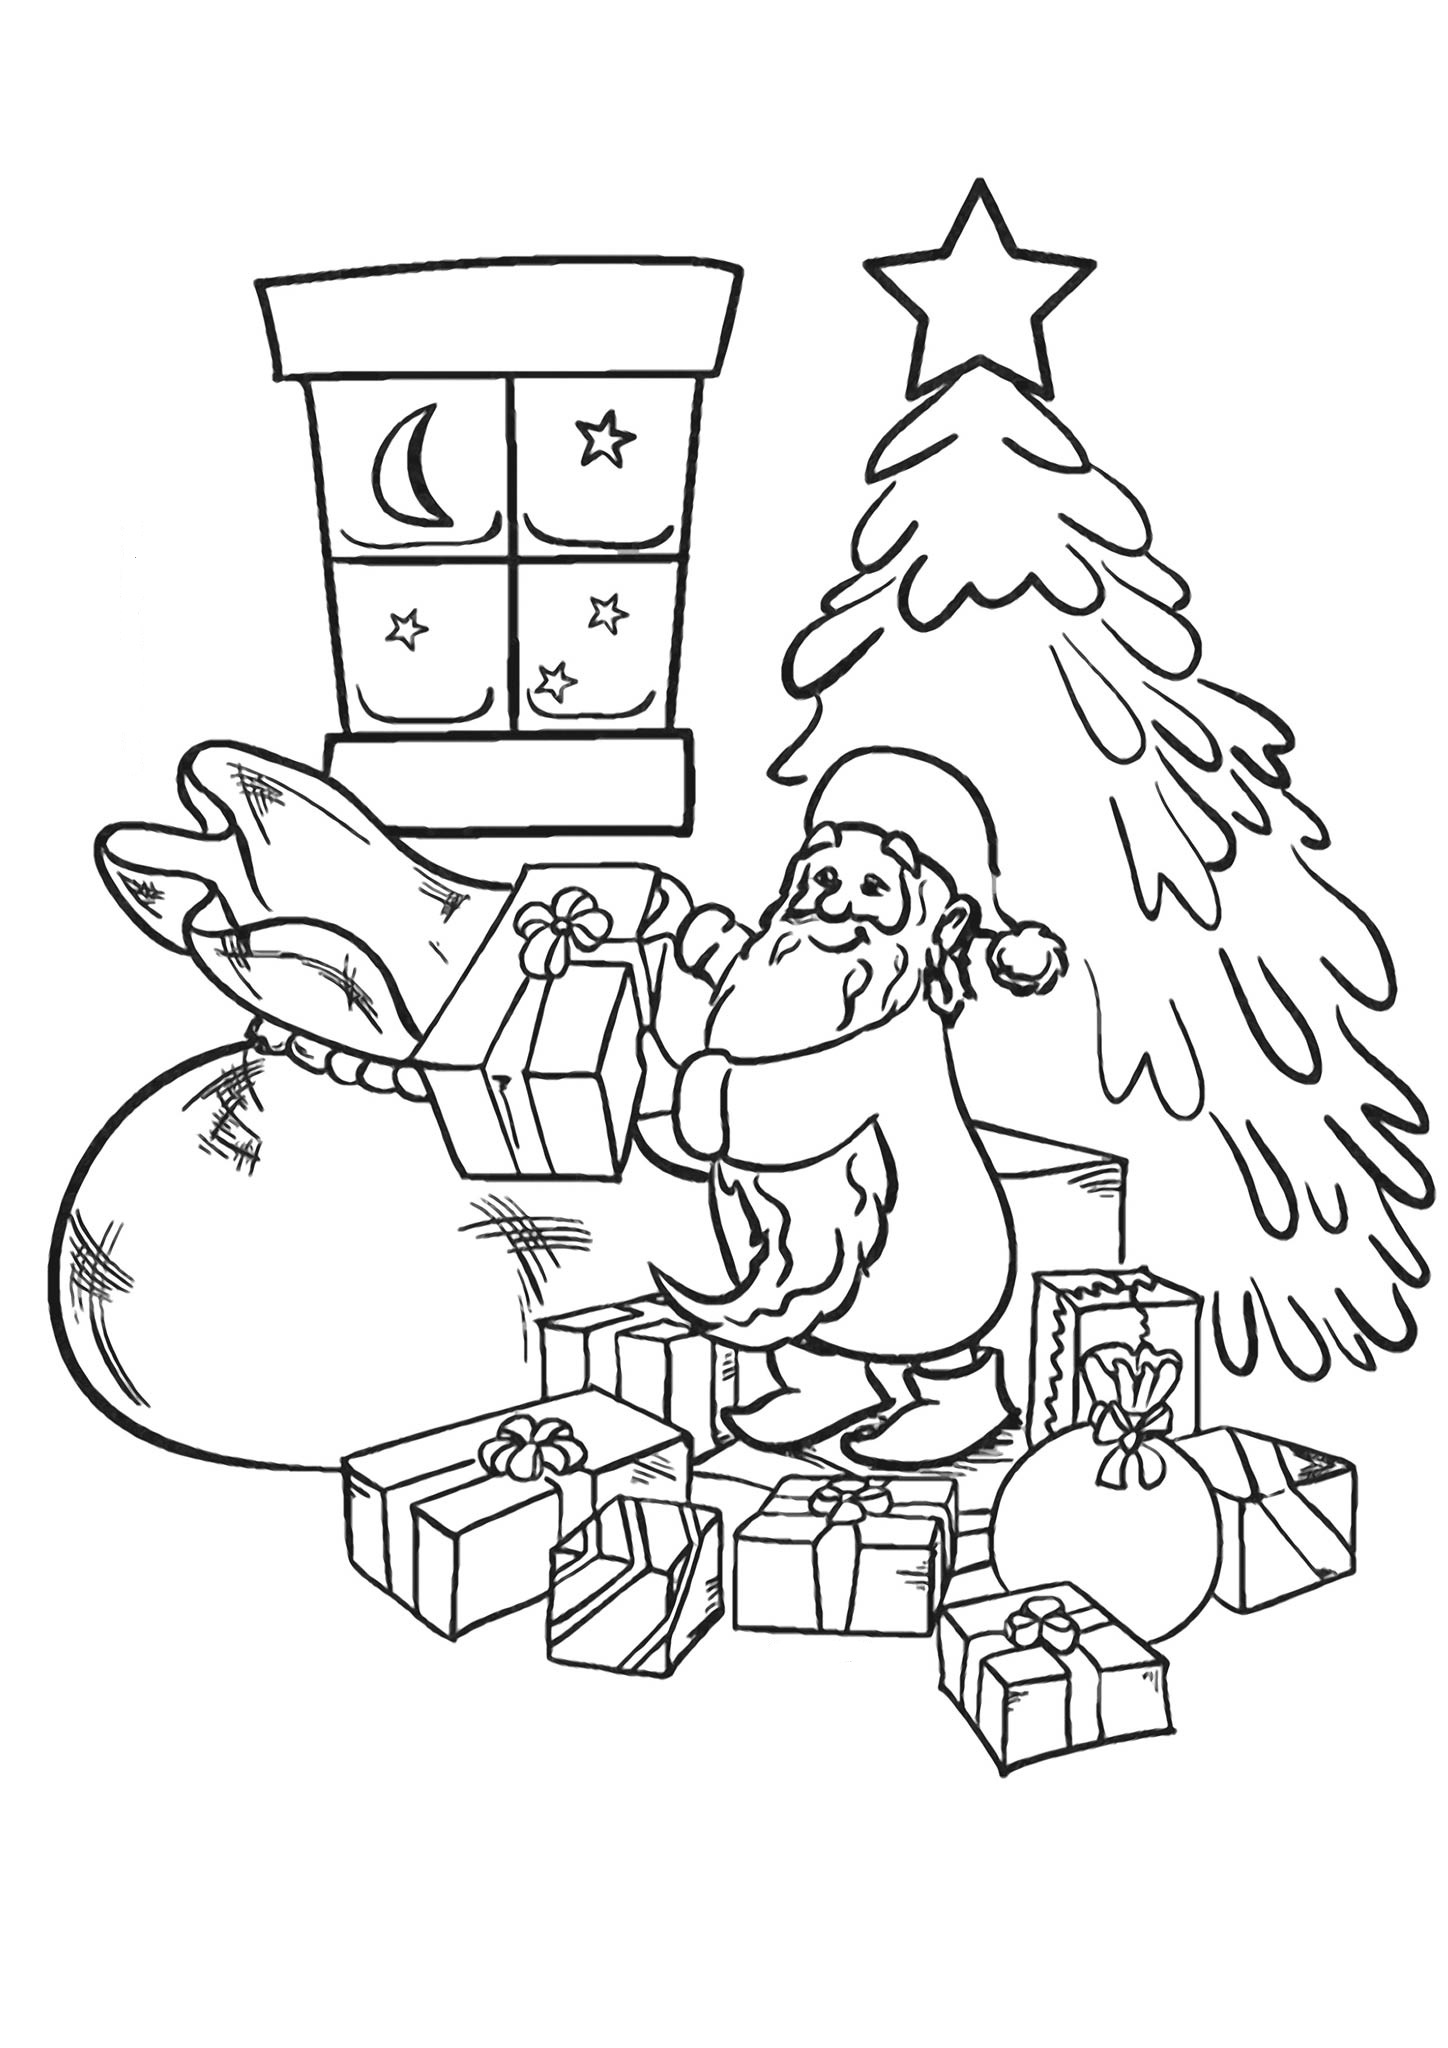 Santa and gifts